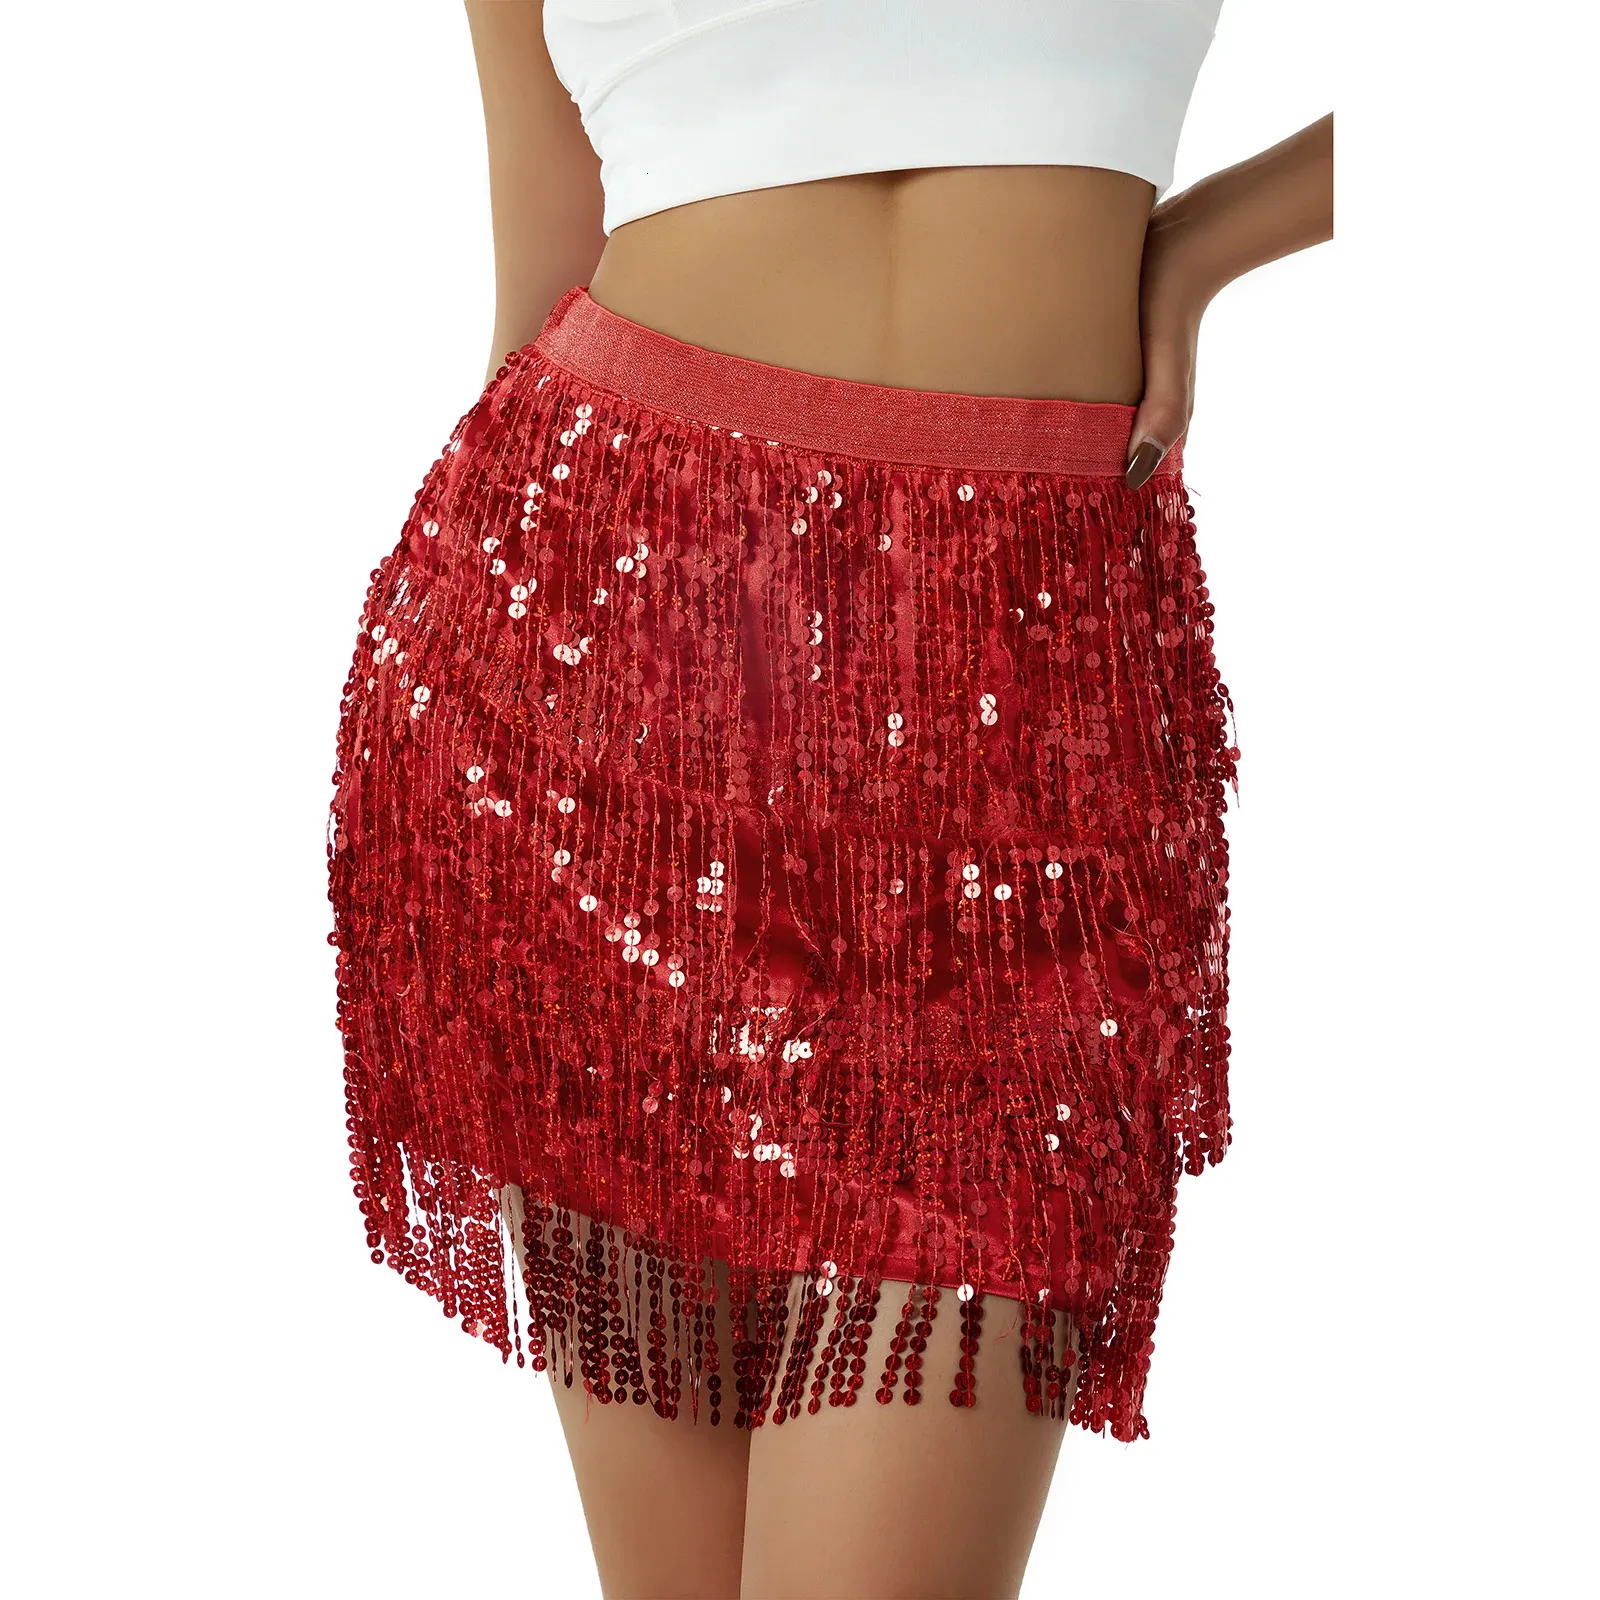 Mulheres lantejoulas franja saia brilhos cintura elástica mini saia para dança rave festa preto/prata/ouro/vermelho 240112